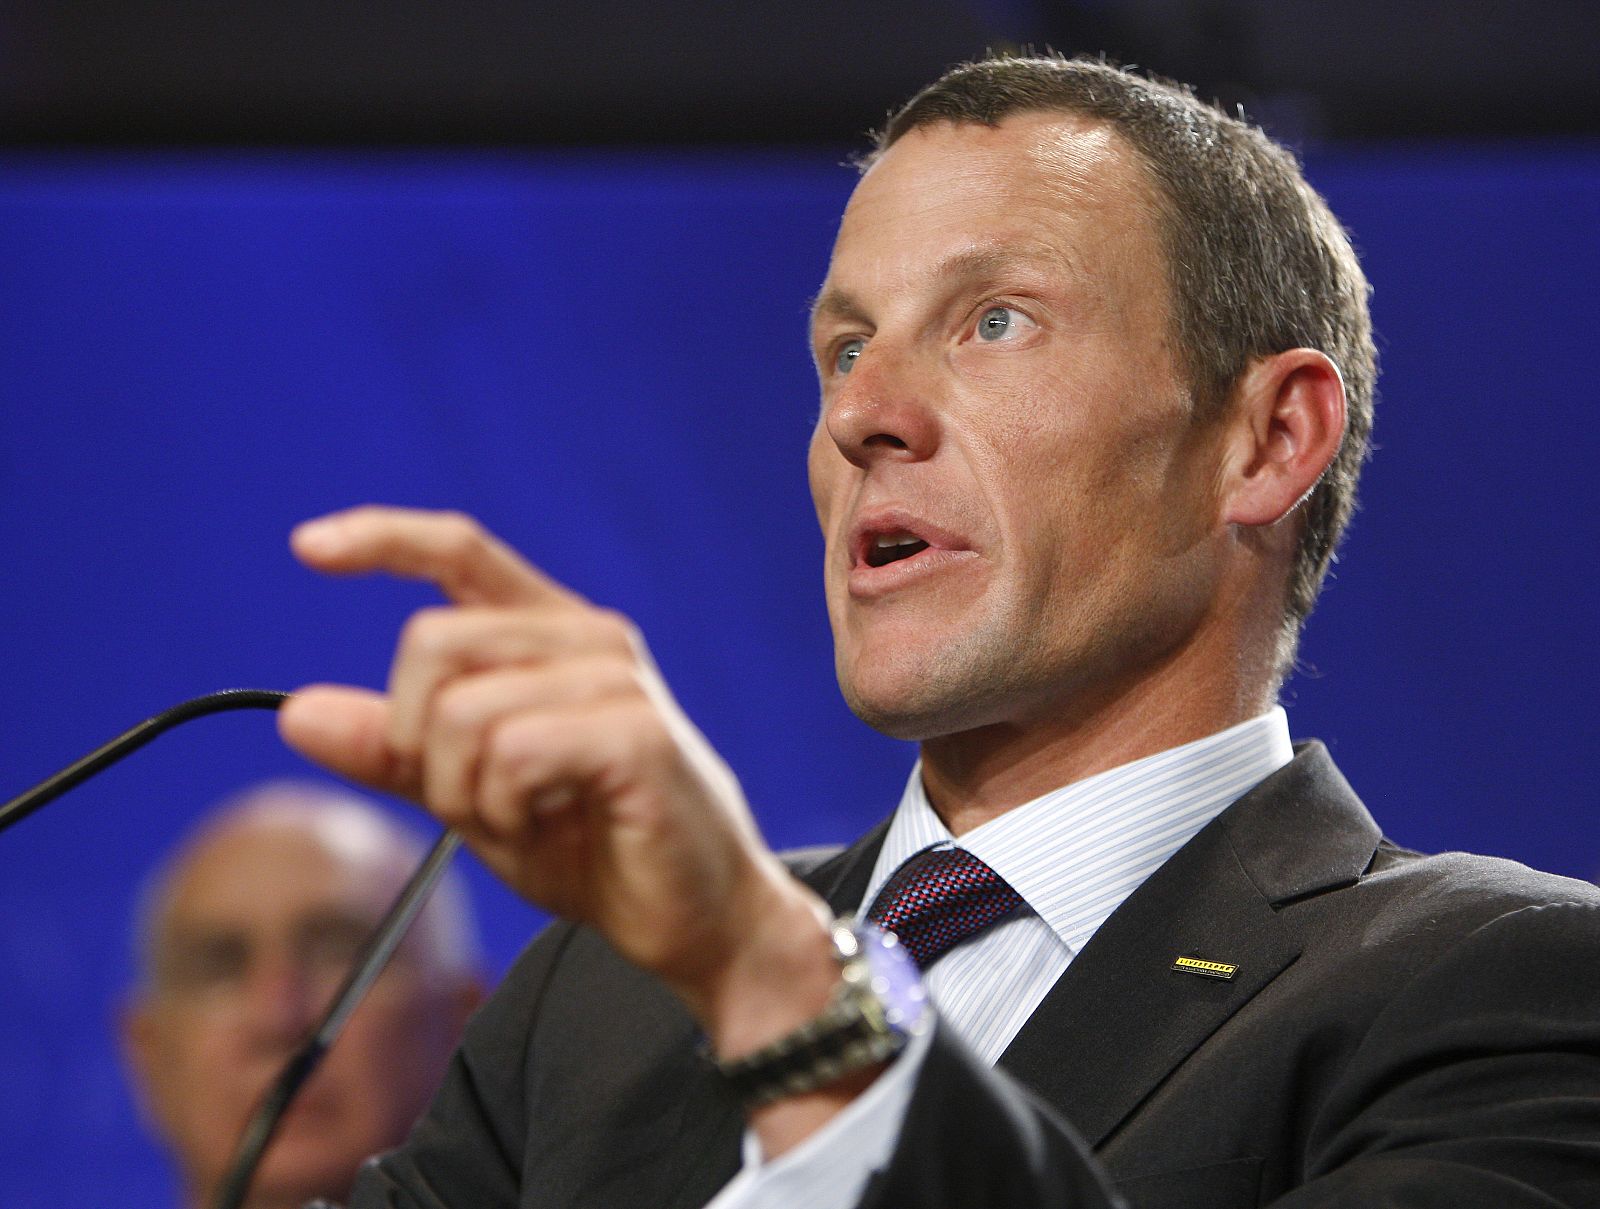 Armstrong anunció su regreso al ciclismo profesional durante el desarrollo de la Vuelta ciclista a España.